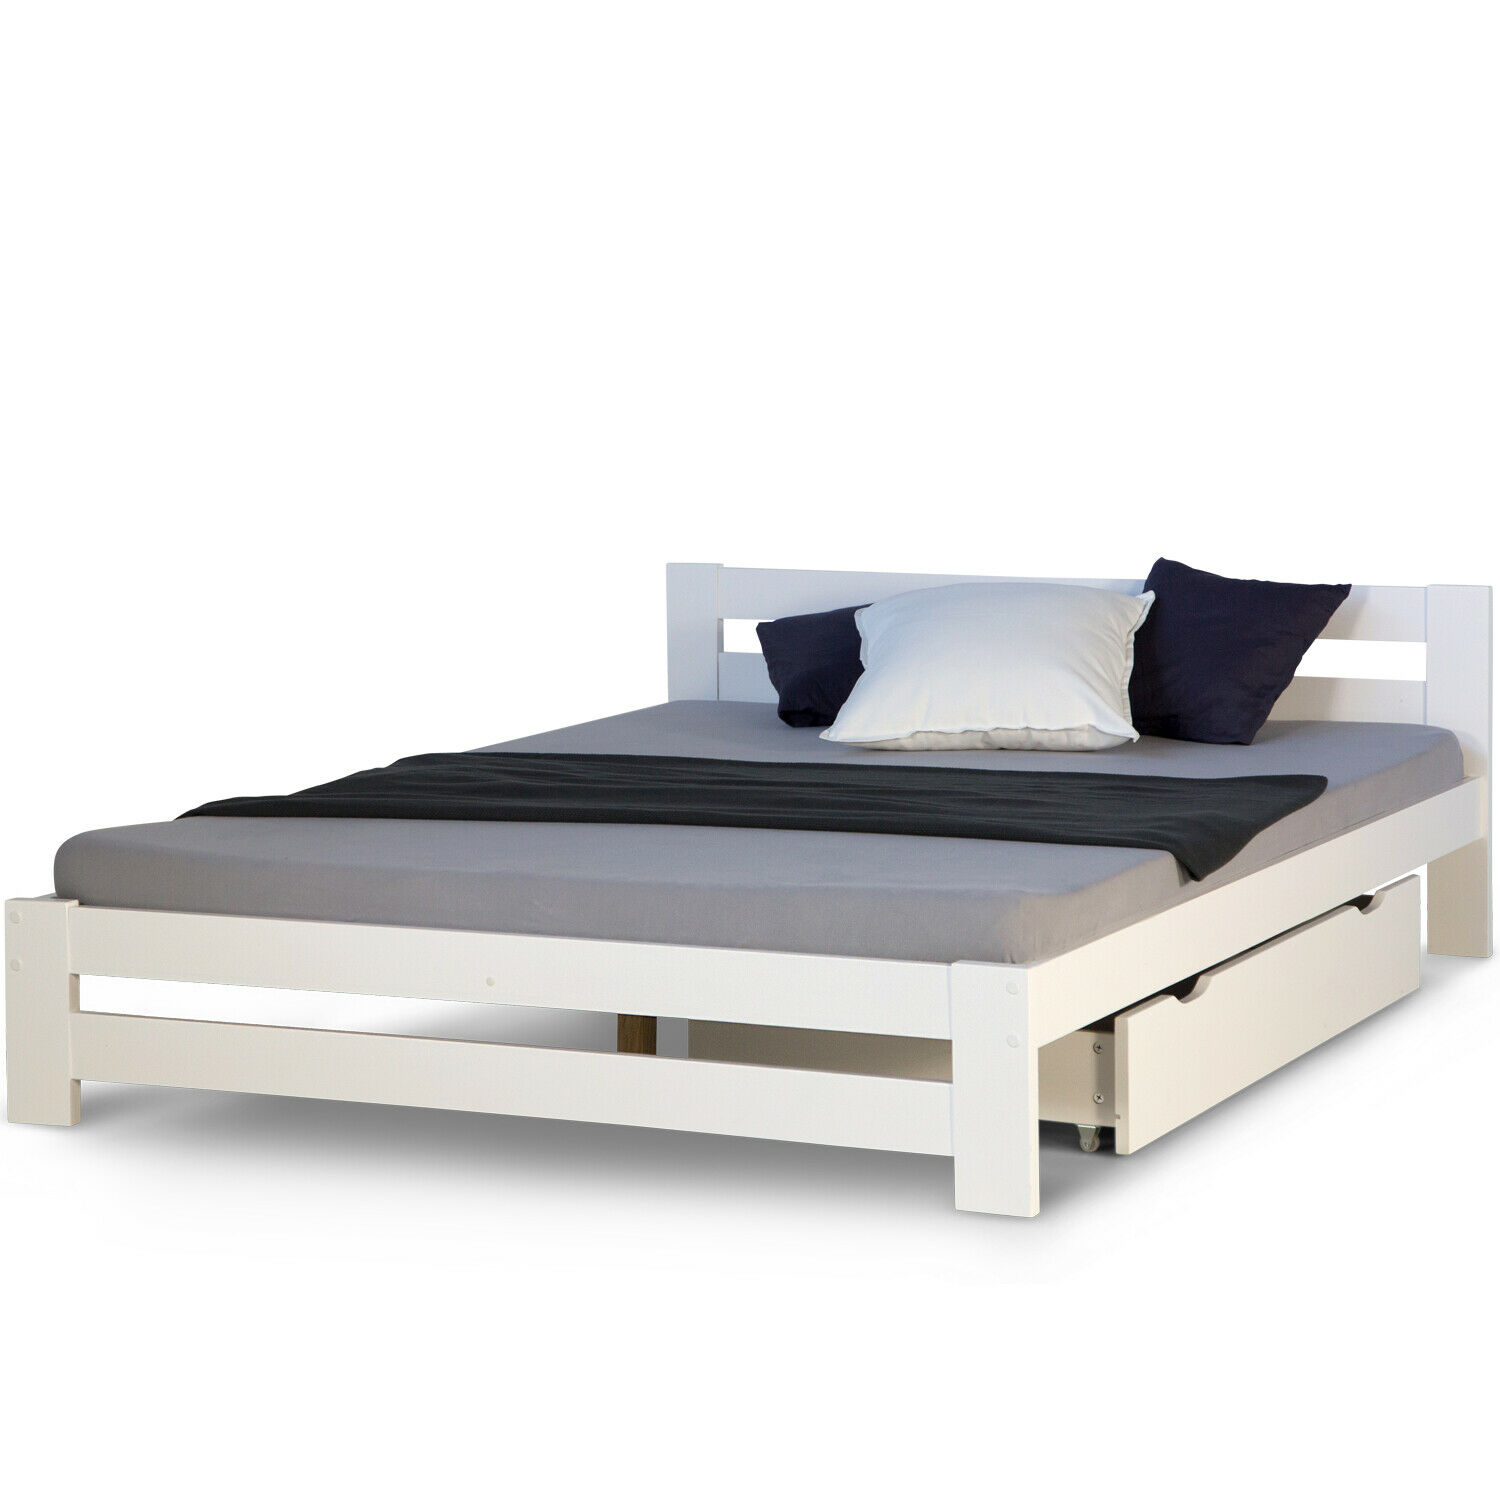 Doppelbett Holzbett 140x200 Weiß Kiefer Bett Mit Bettkasten Bettgestell Holz